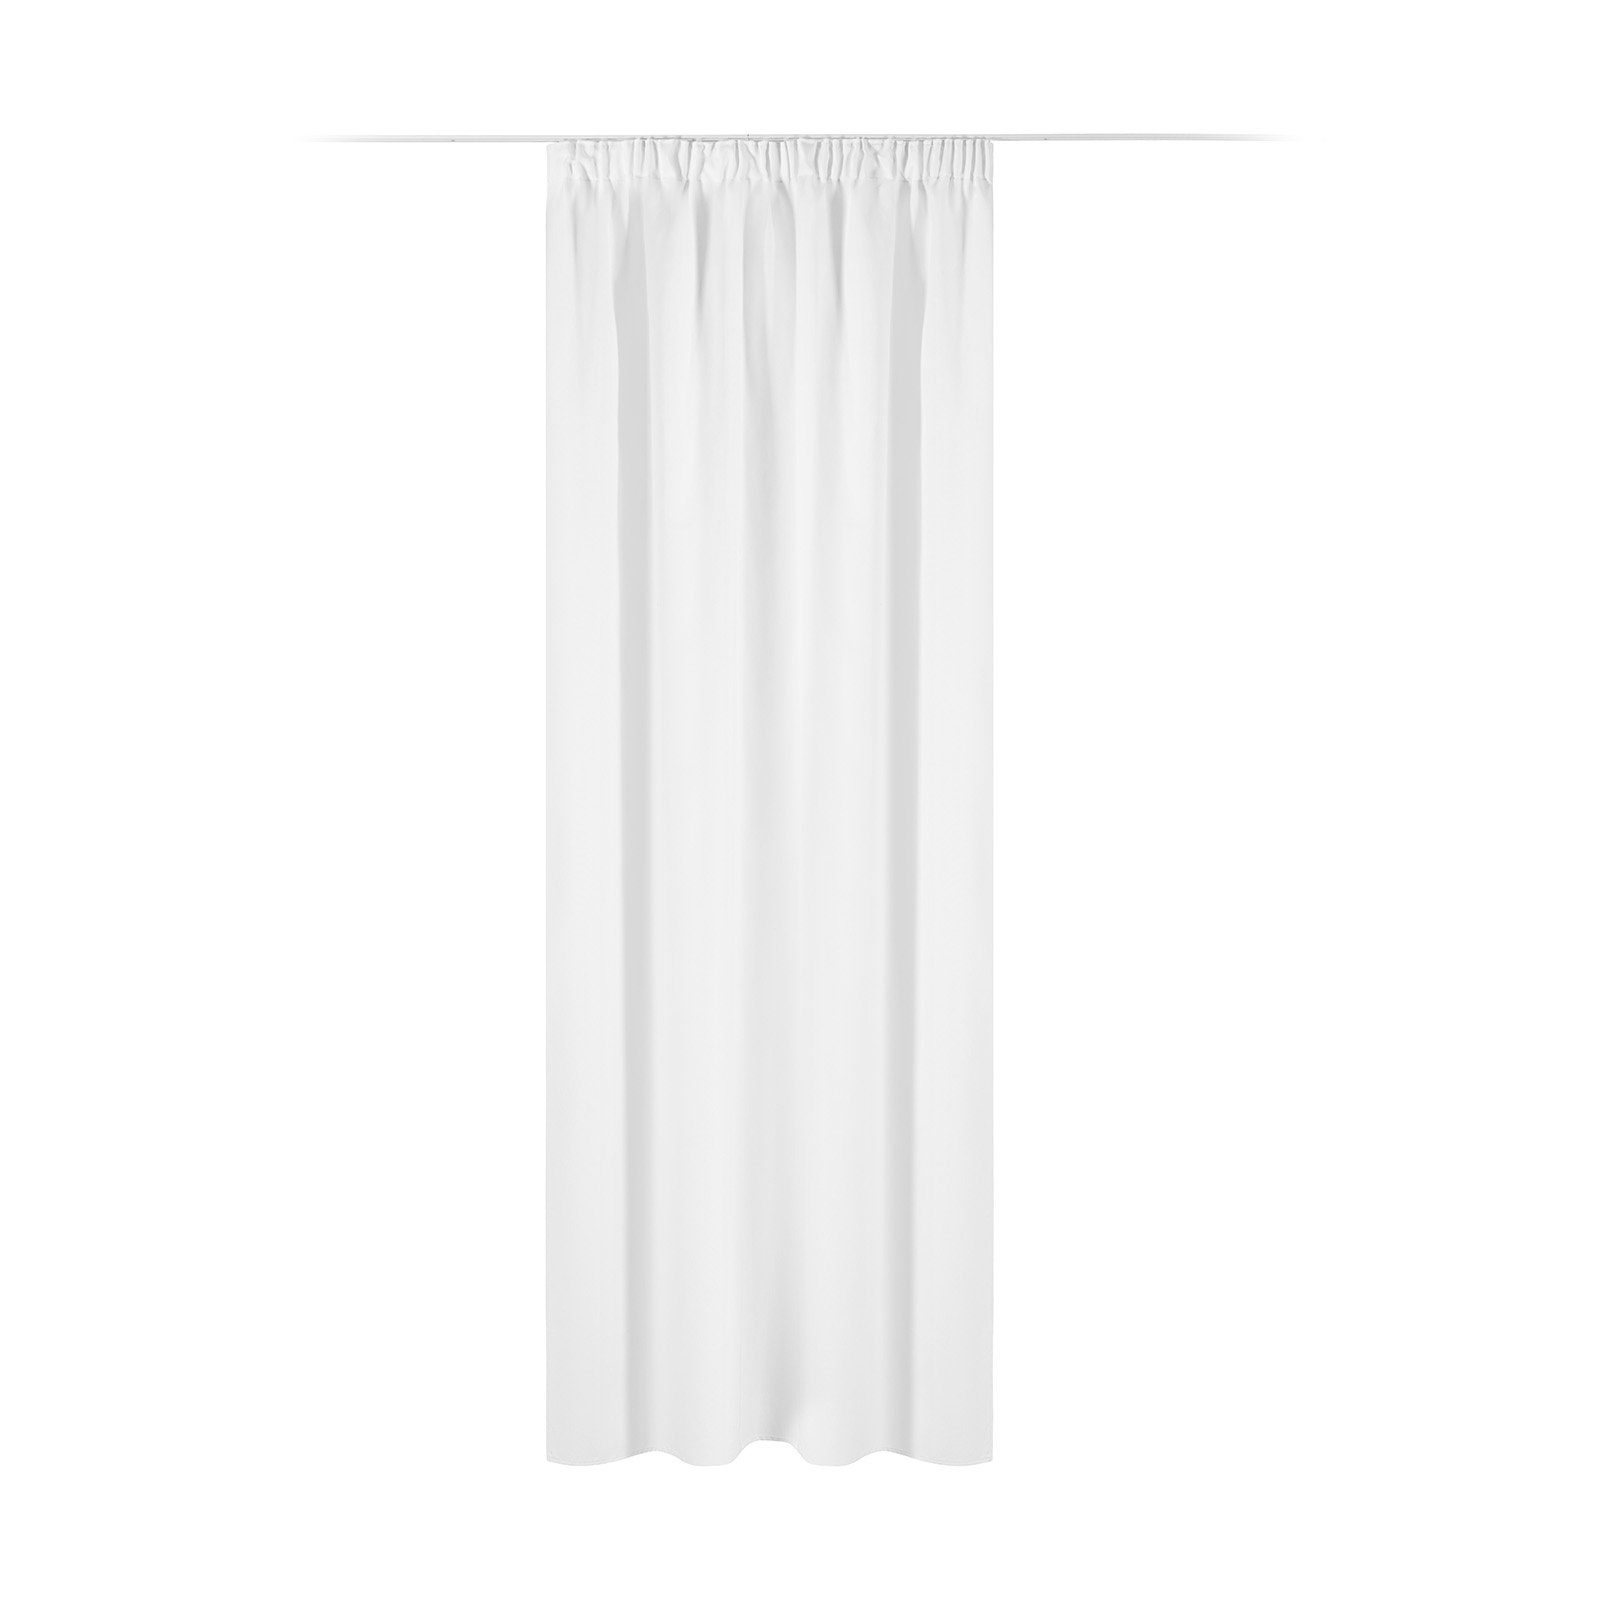 Vorhang Blickdichter Vorhang 140x245cm mit Kräuselband, JEMIDI Weiß